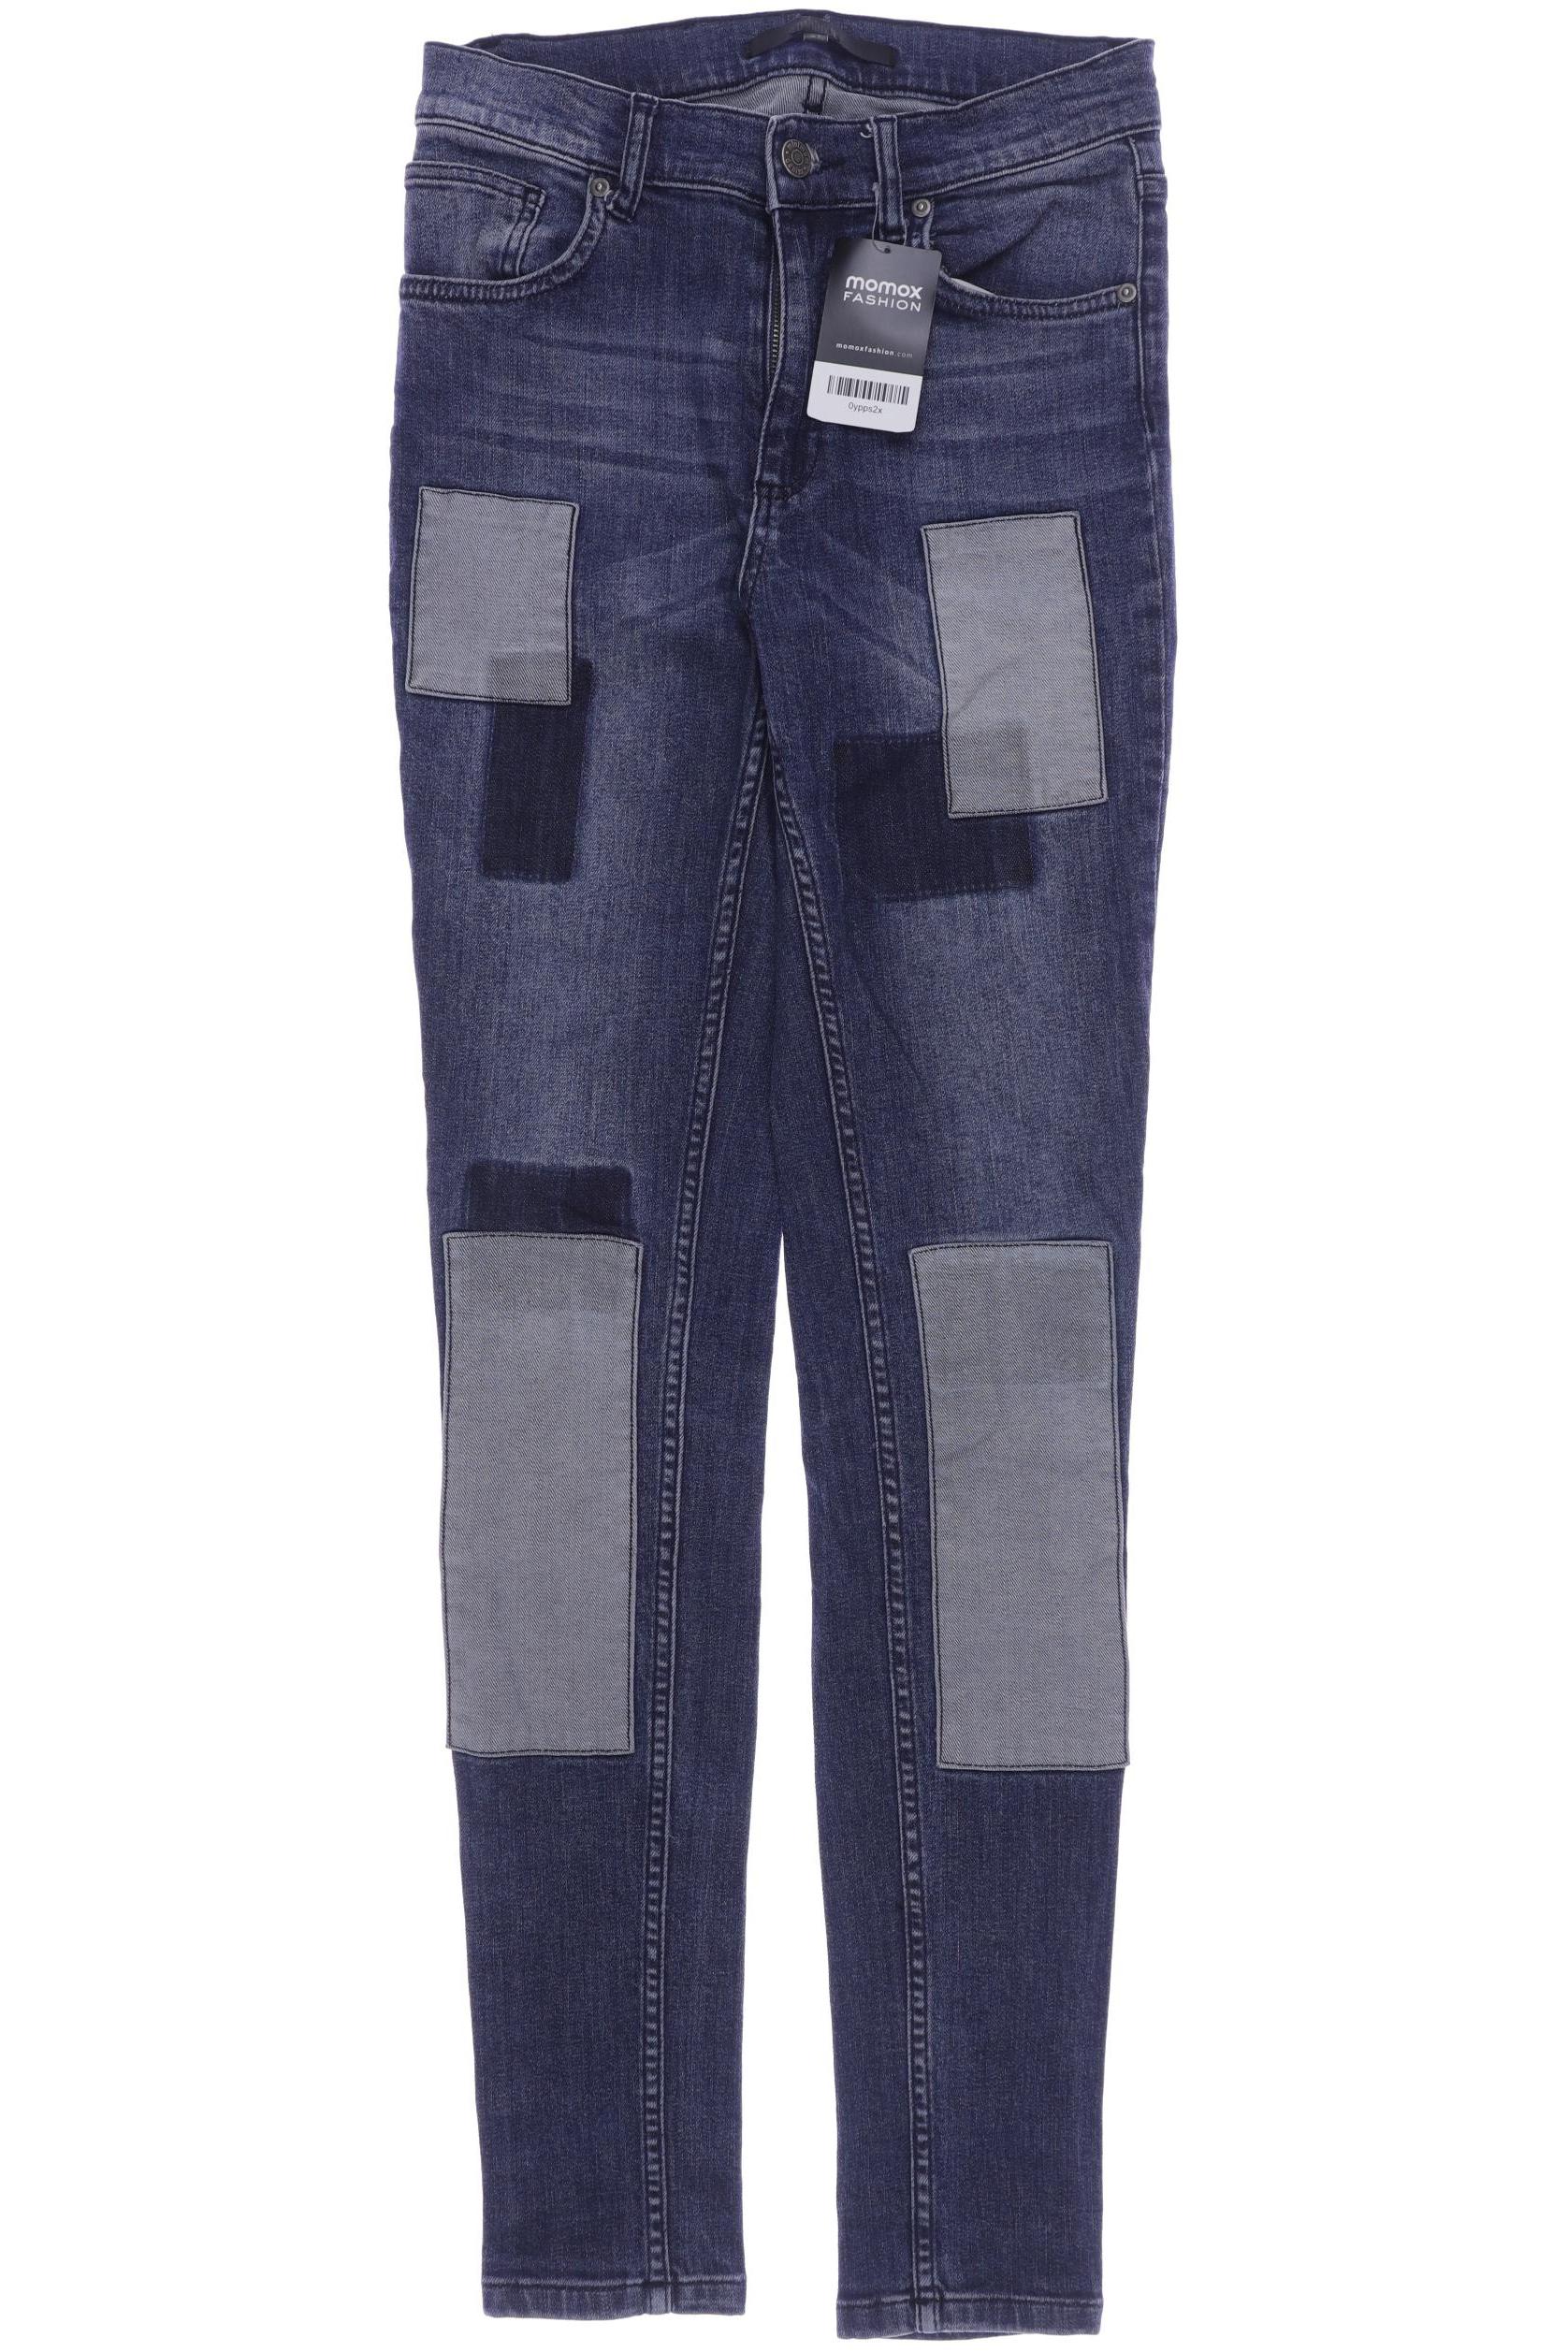 Minimum Damen Jeans, marineblau, Gr. 38 von Minimum